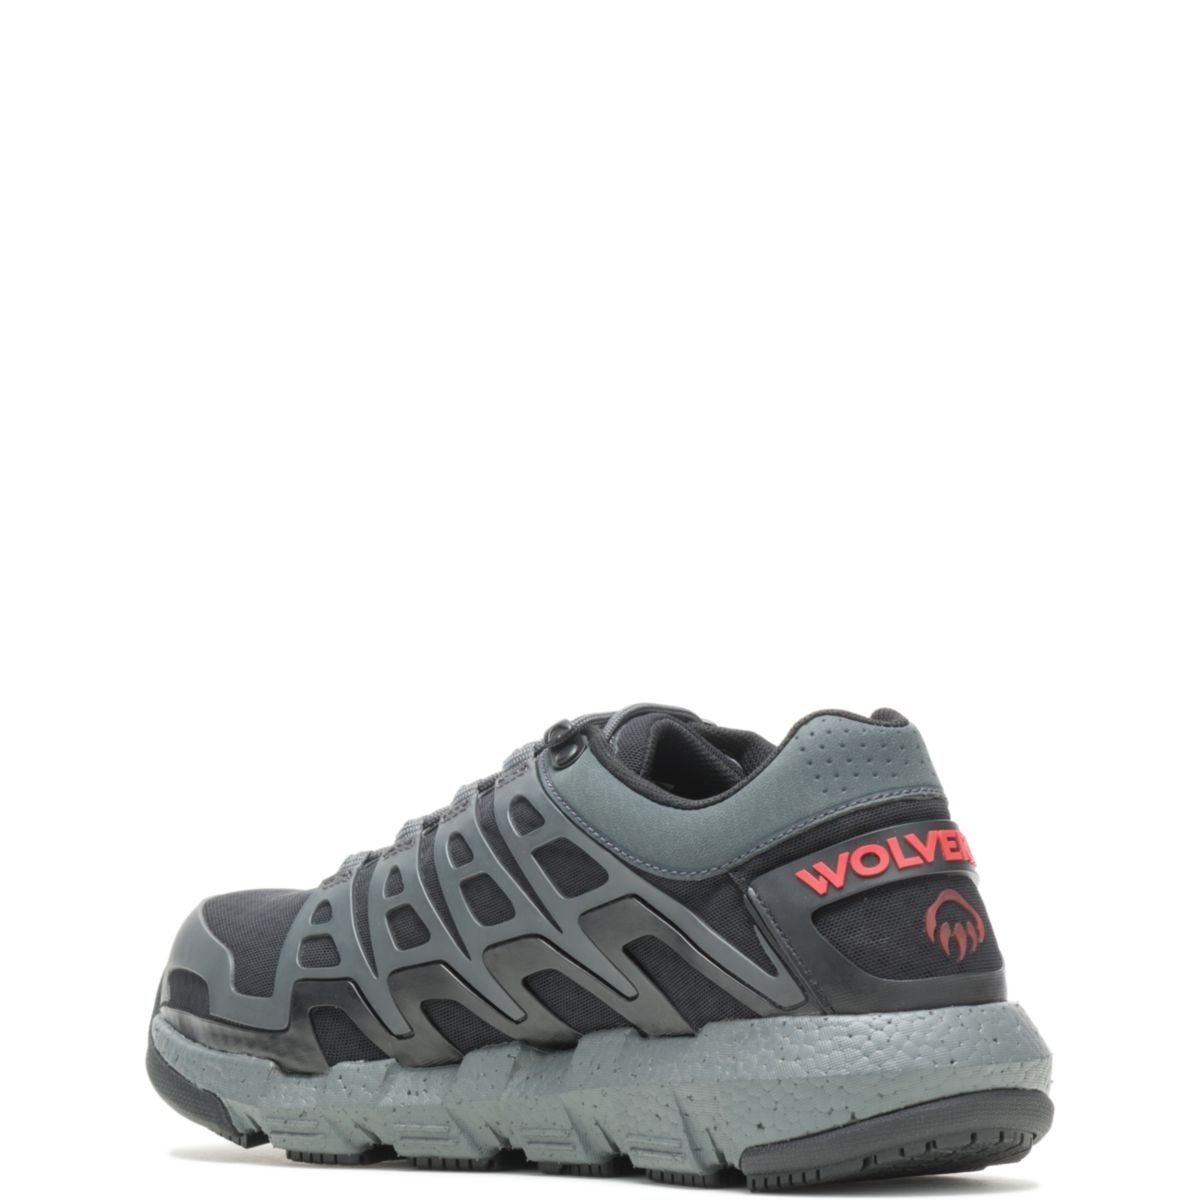 WOLVERINE Men's Rev Vent UltraSpringâ¢ DuraShocksÂ® CarbonMAXÂ® Composite Toe Work Shoe Charcoal - W211016 CHARCOAL - CHARCOAL, 10